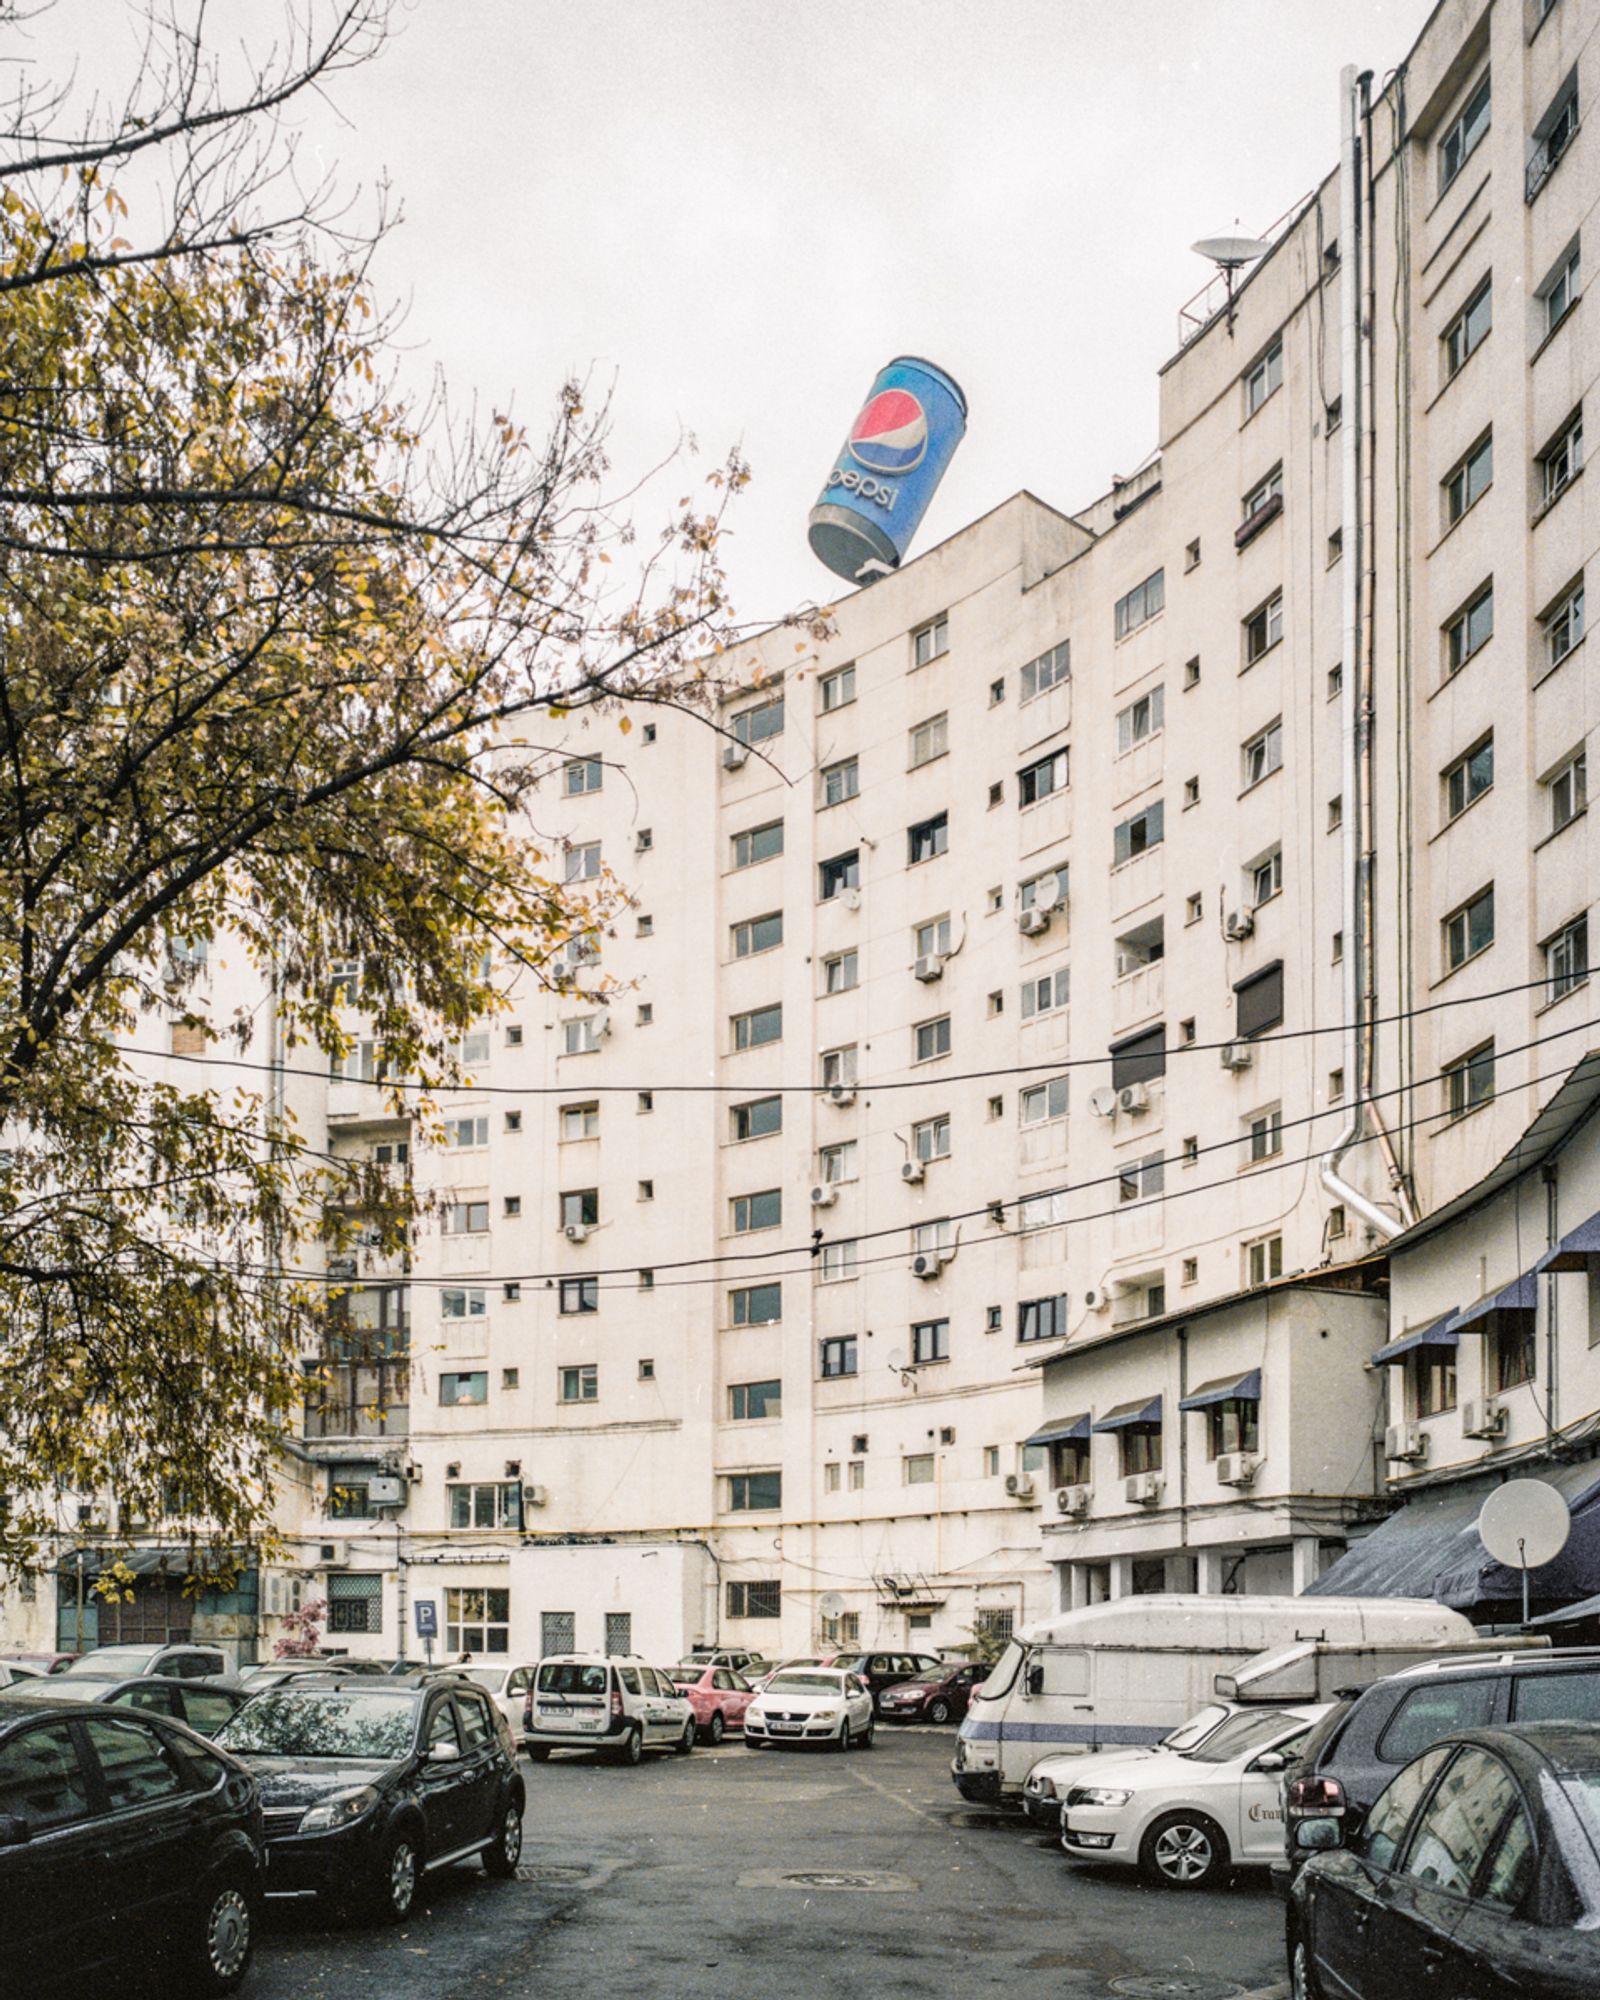 © Paweł Jaśkiewicz - Image from the Serene urbanism photography project